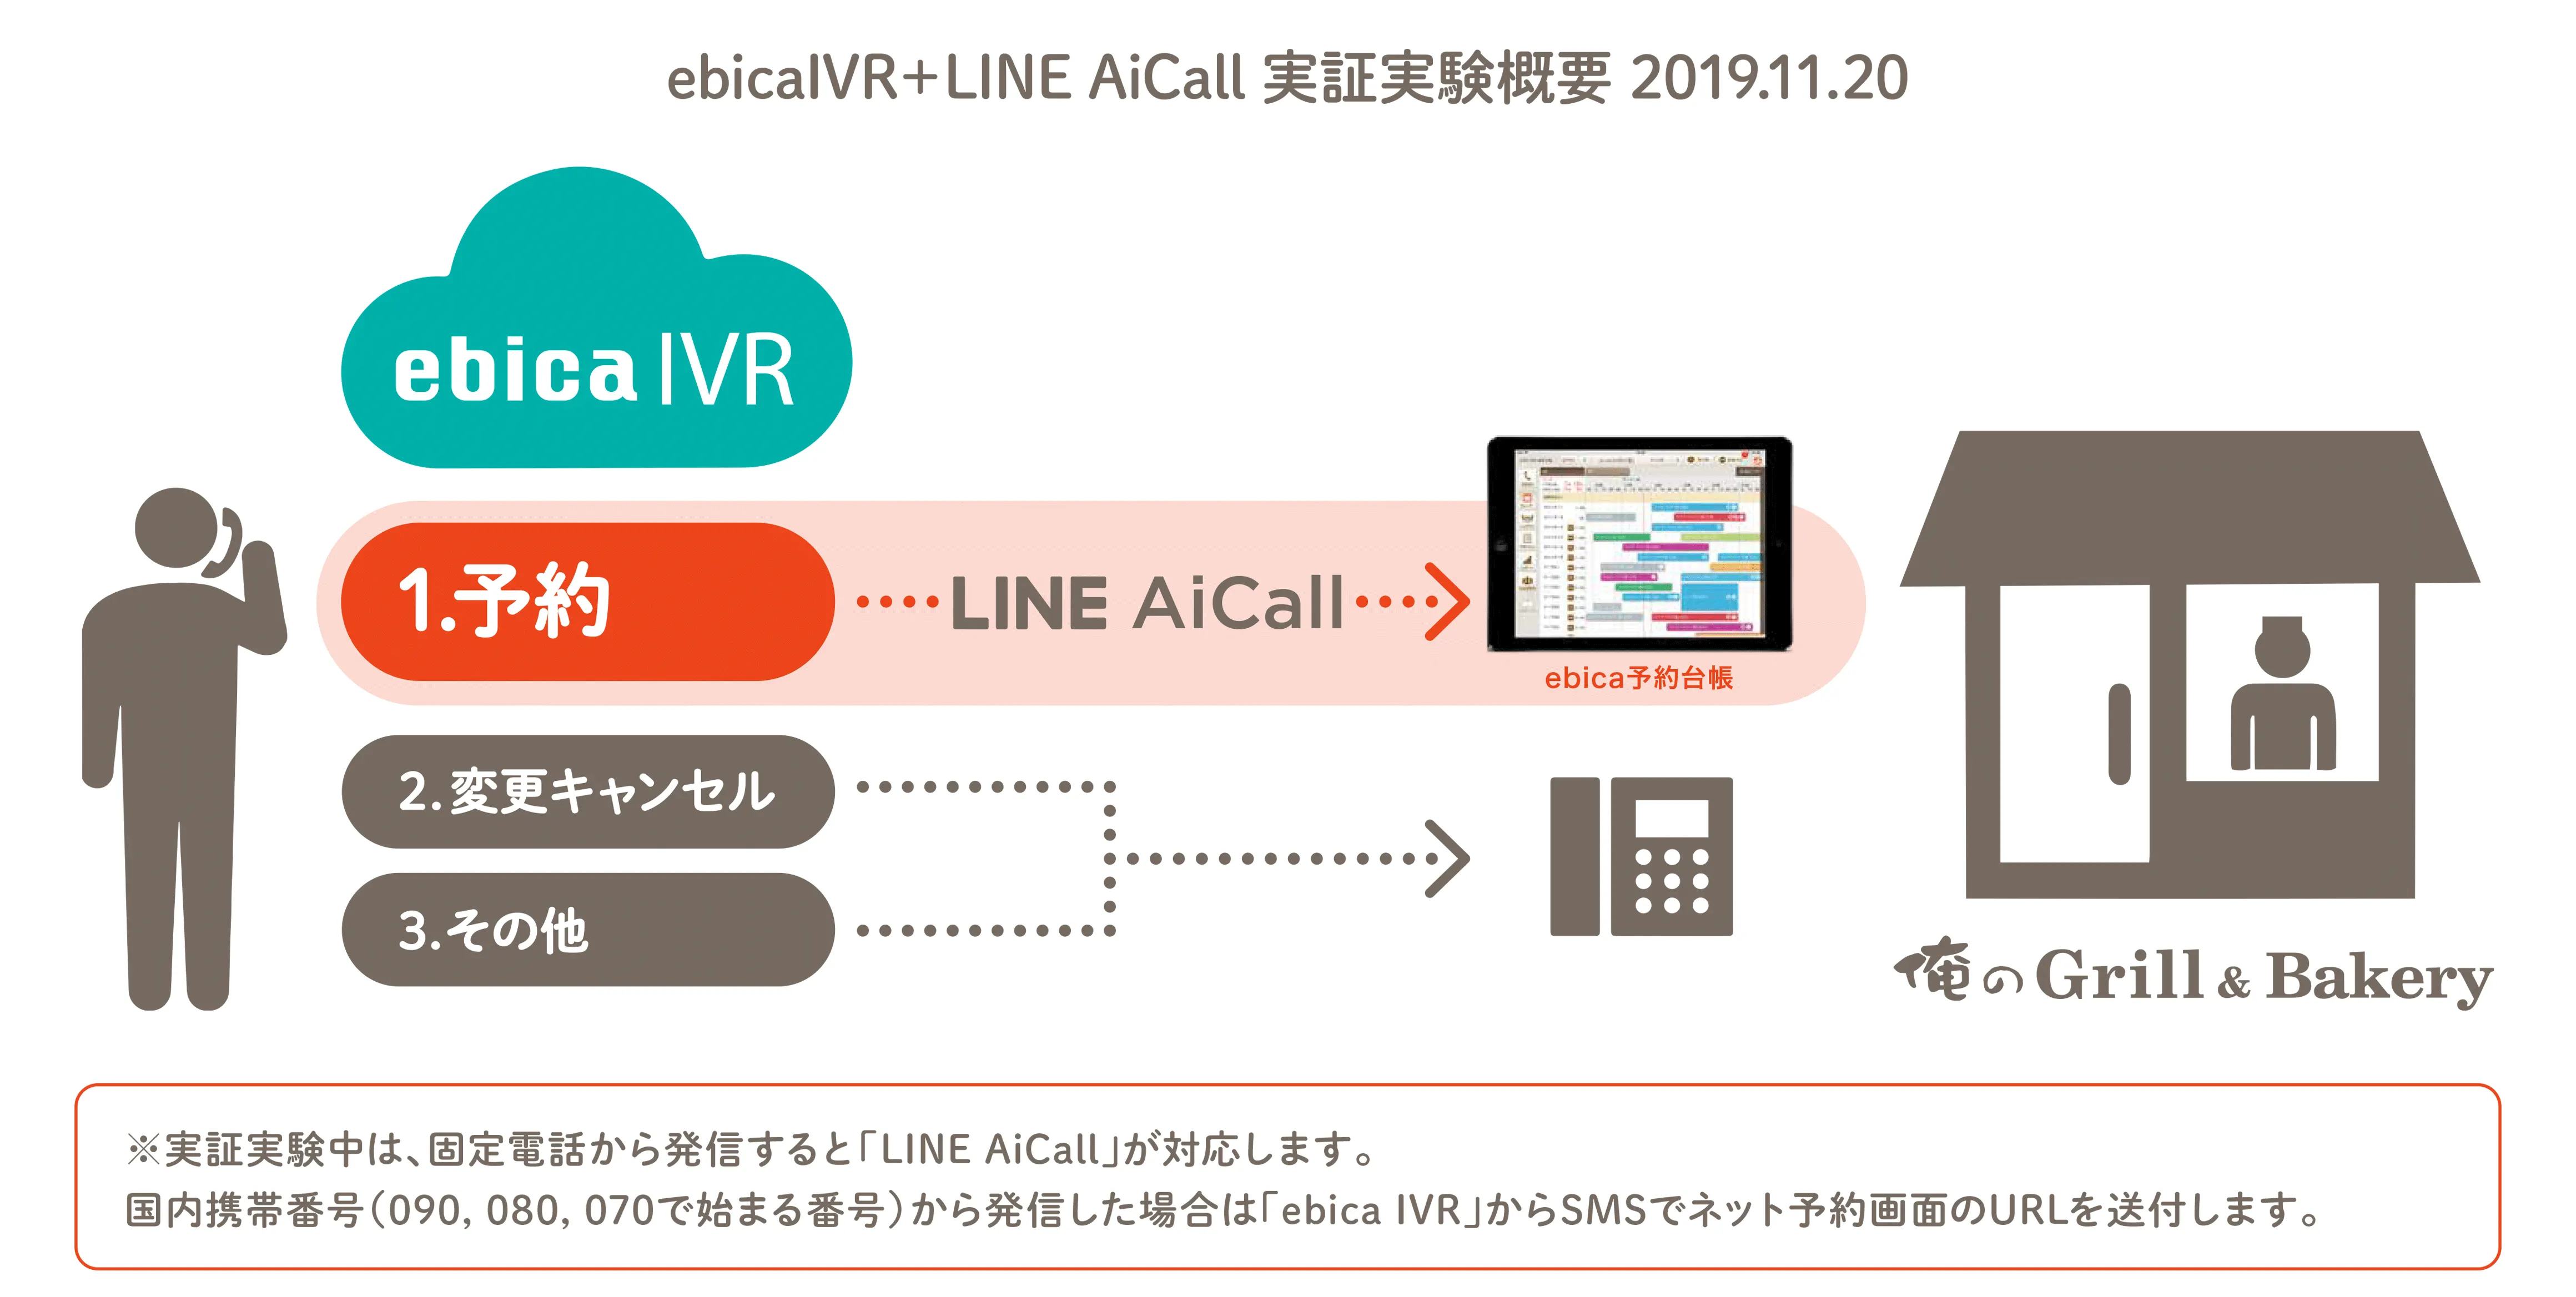 LINE AiCall ebica IVR 実証実験概要図